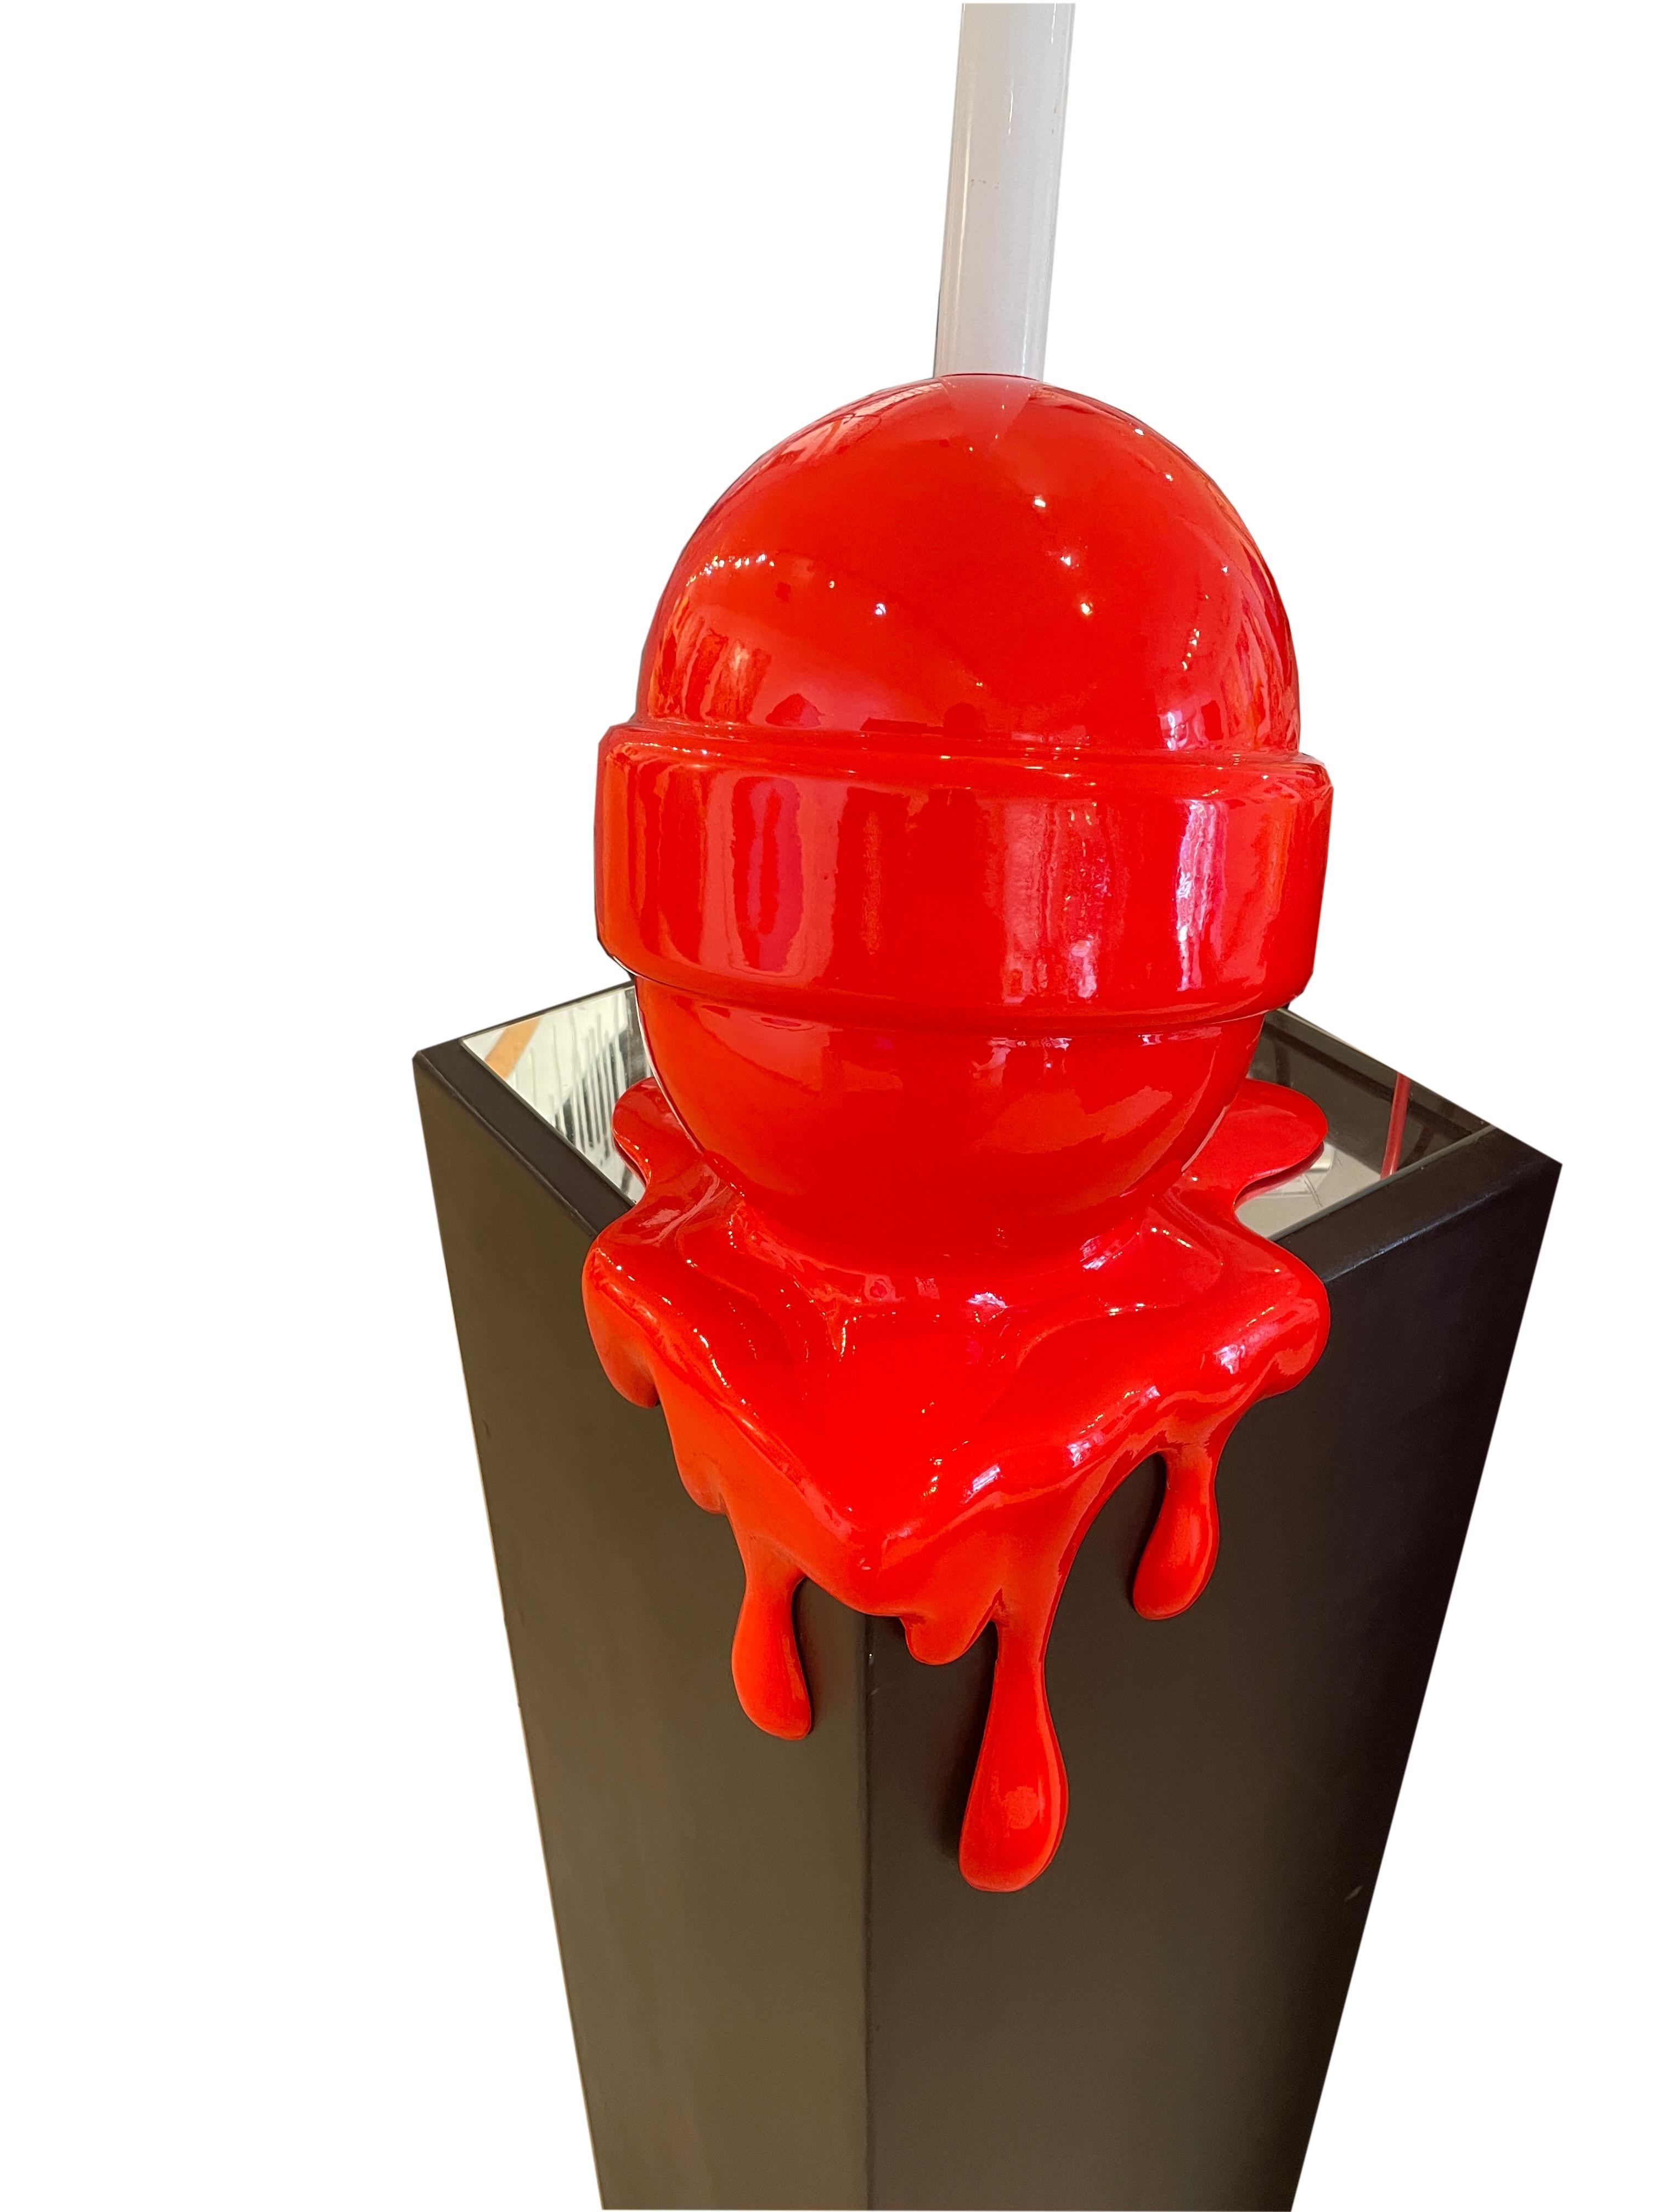 lollipop art sculpture